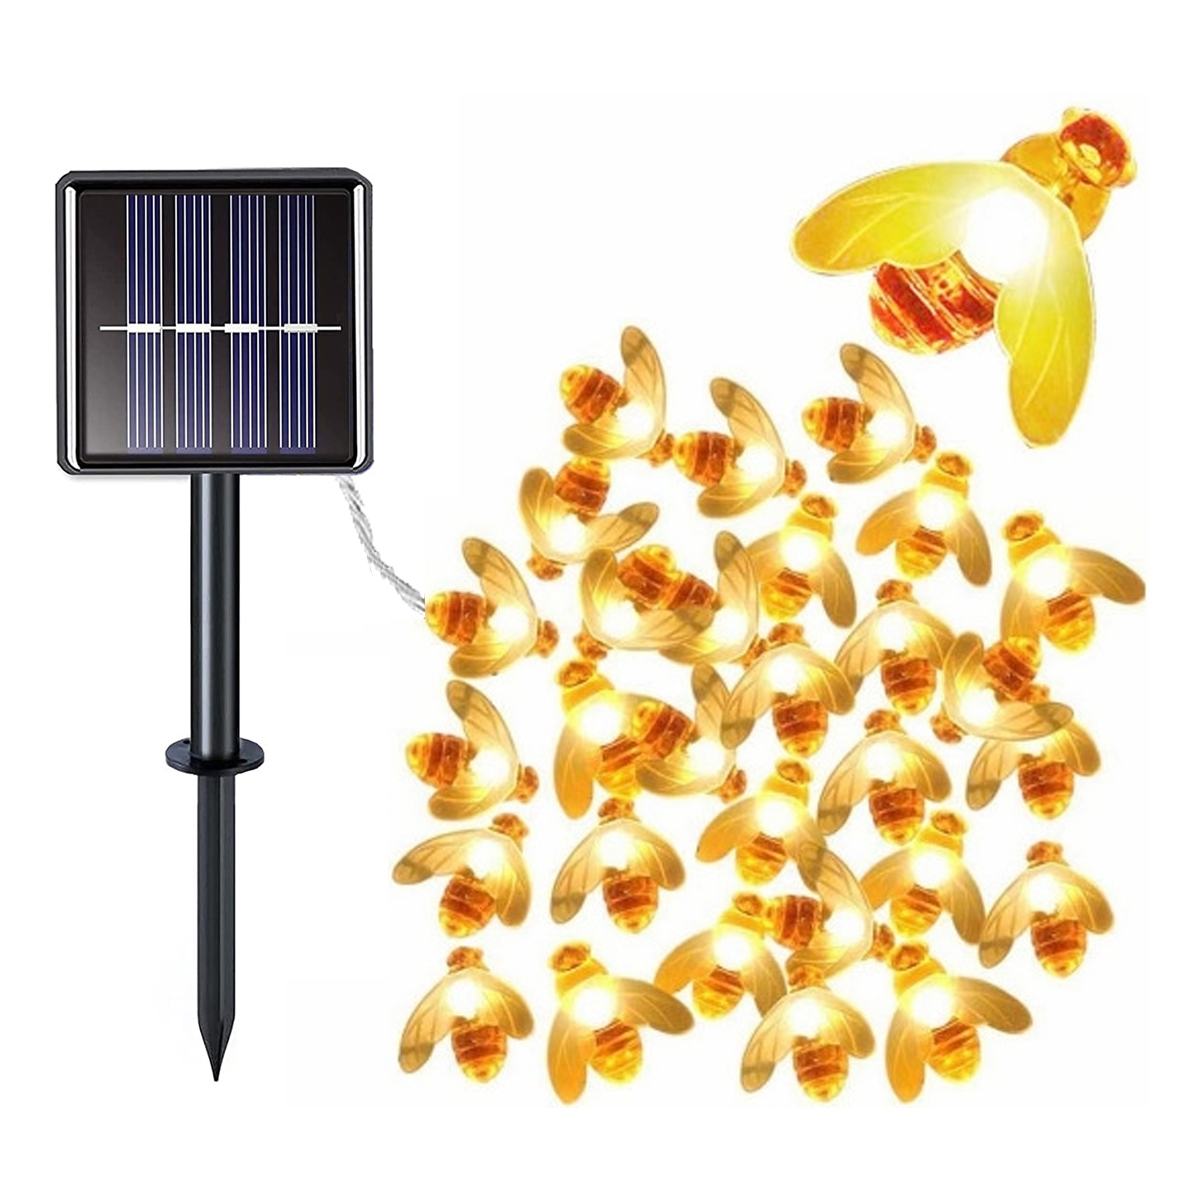 DEDOM Solar-Lichterkette Biene, Solar-Lichterkette, 50 Biene Solar-Lichterketten, Lichter 7m Warmweiß Lichterkette, Kleine Bienenleuchten